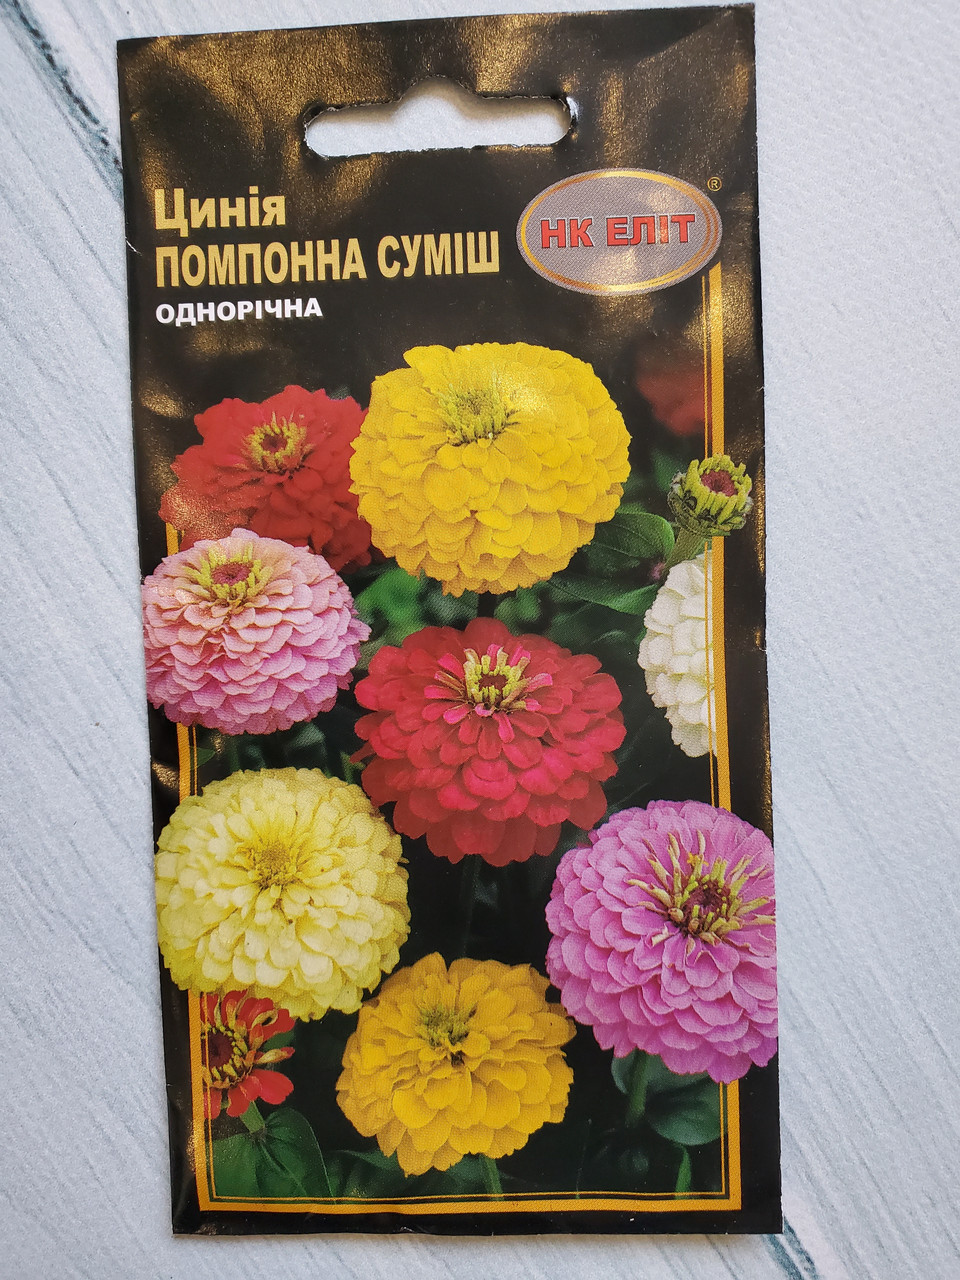 Насіння квітів Ціннія Помпонна суміш 0,5 г НК Еліт